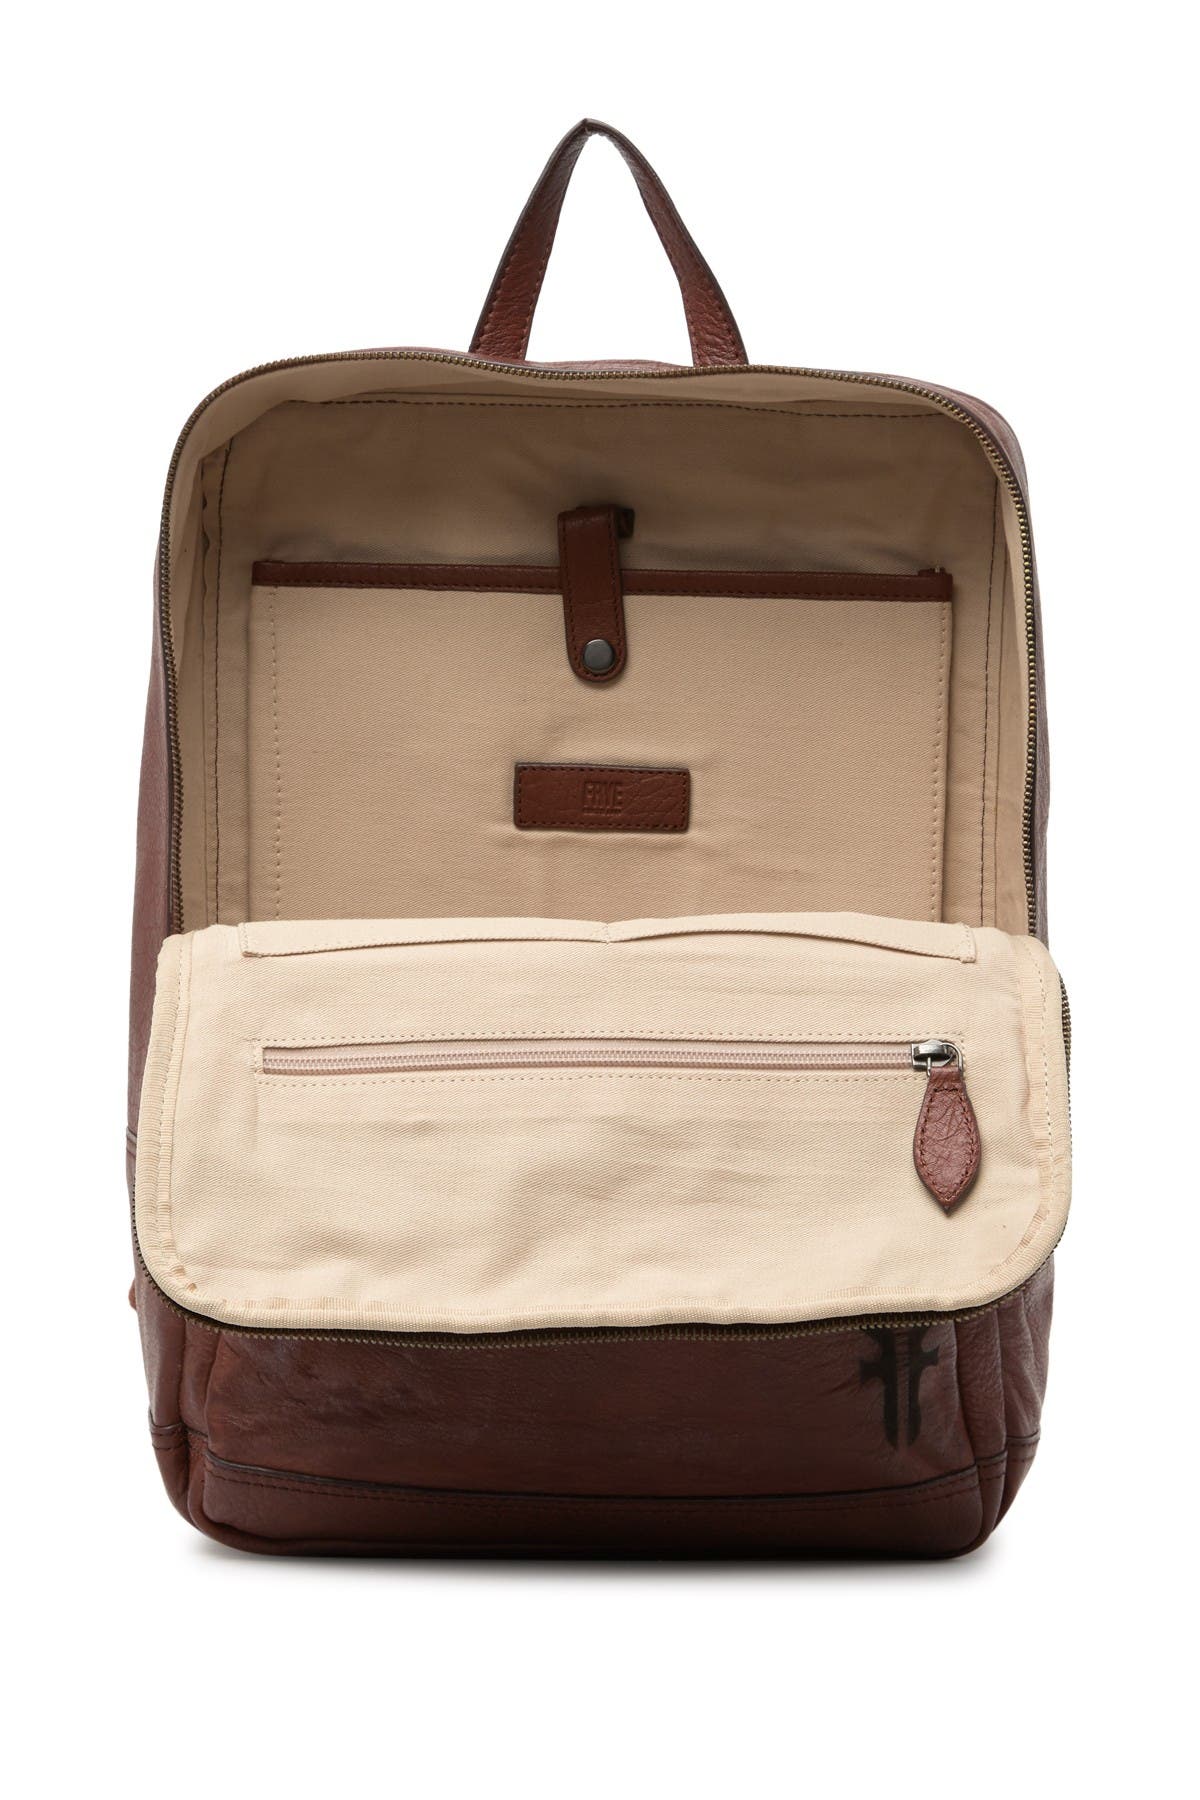 Frye | Leather Backpack | Nordstrom Rack